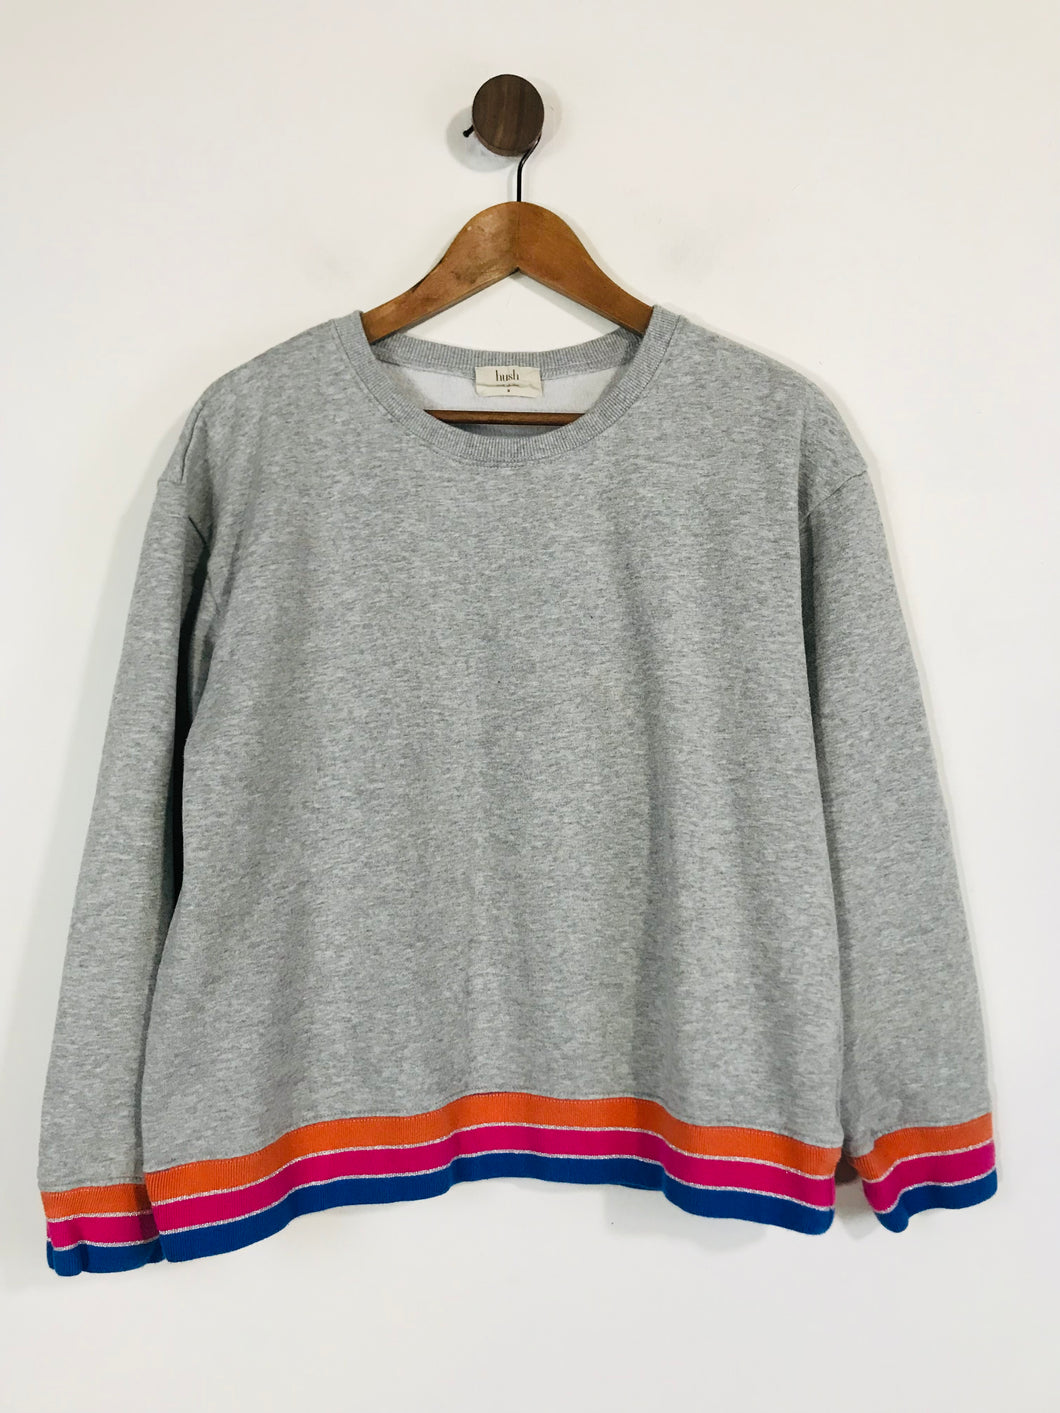 Hush Women's Sweatshirt | M UK10-12 | Grey